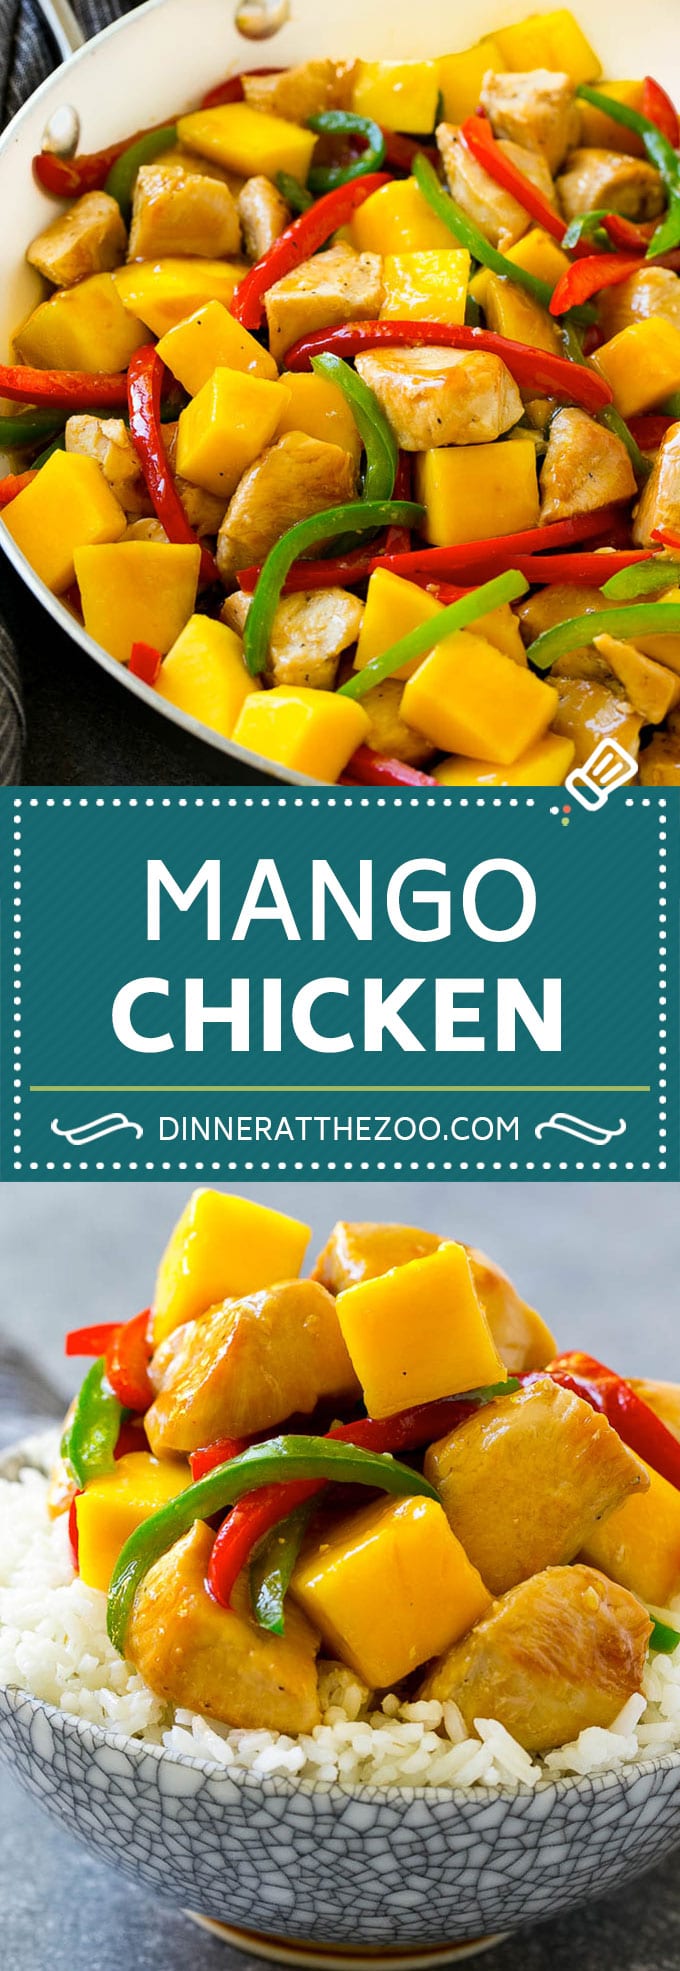 Mango Chicken Recipe | Chicken with Mango | Chicken Stir Fry #chicken #mango #stirfry #peppers #dinner #healthy #dinneratthezoo